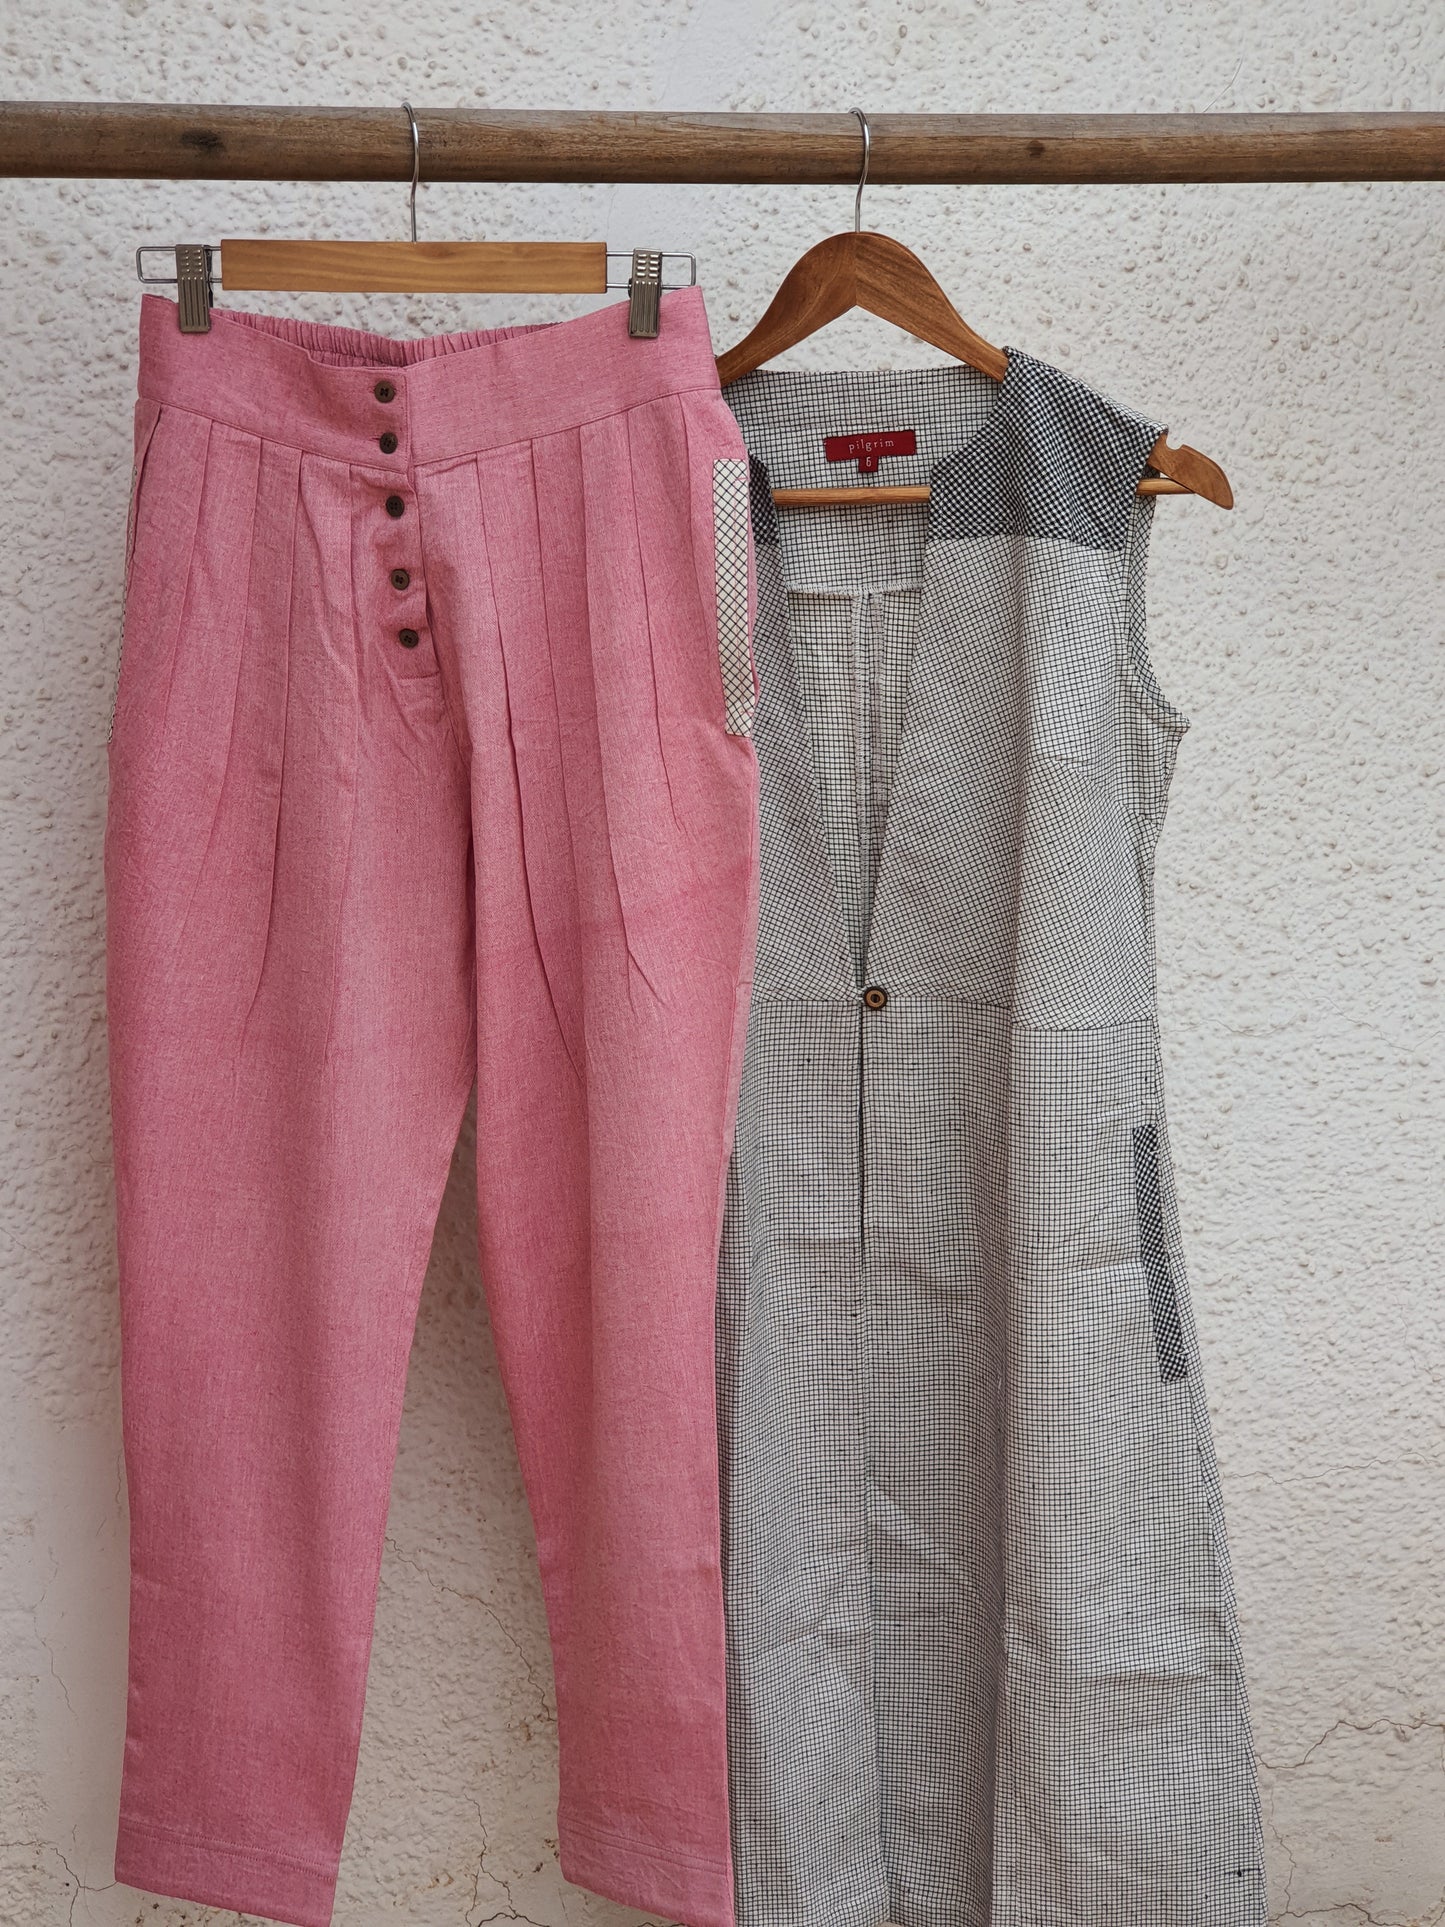 Pinwheel Pants - Pink Cotton